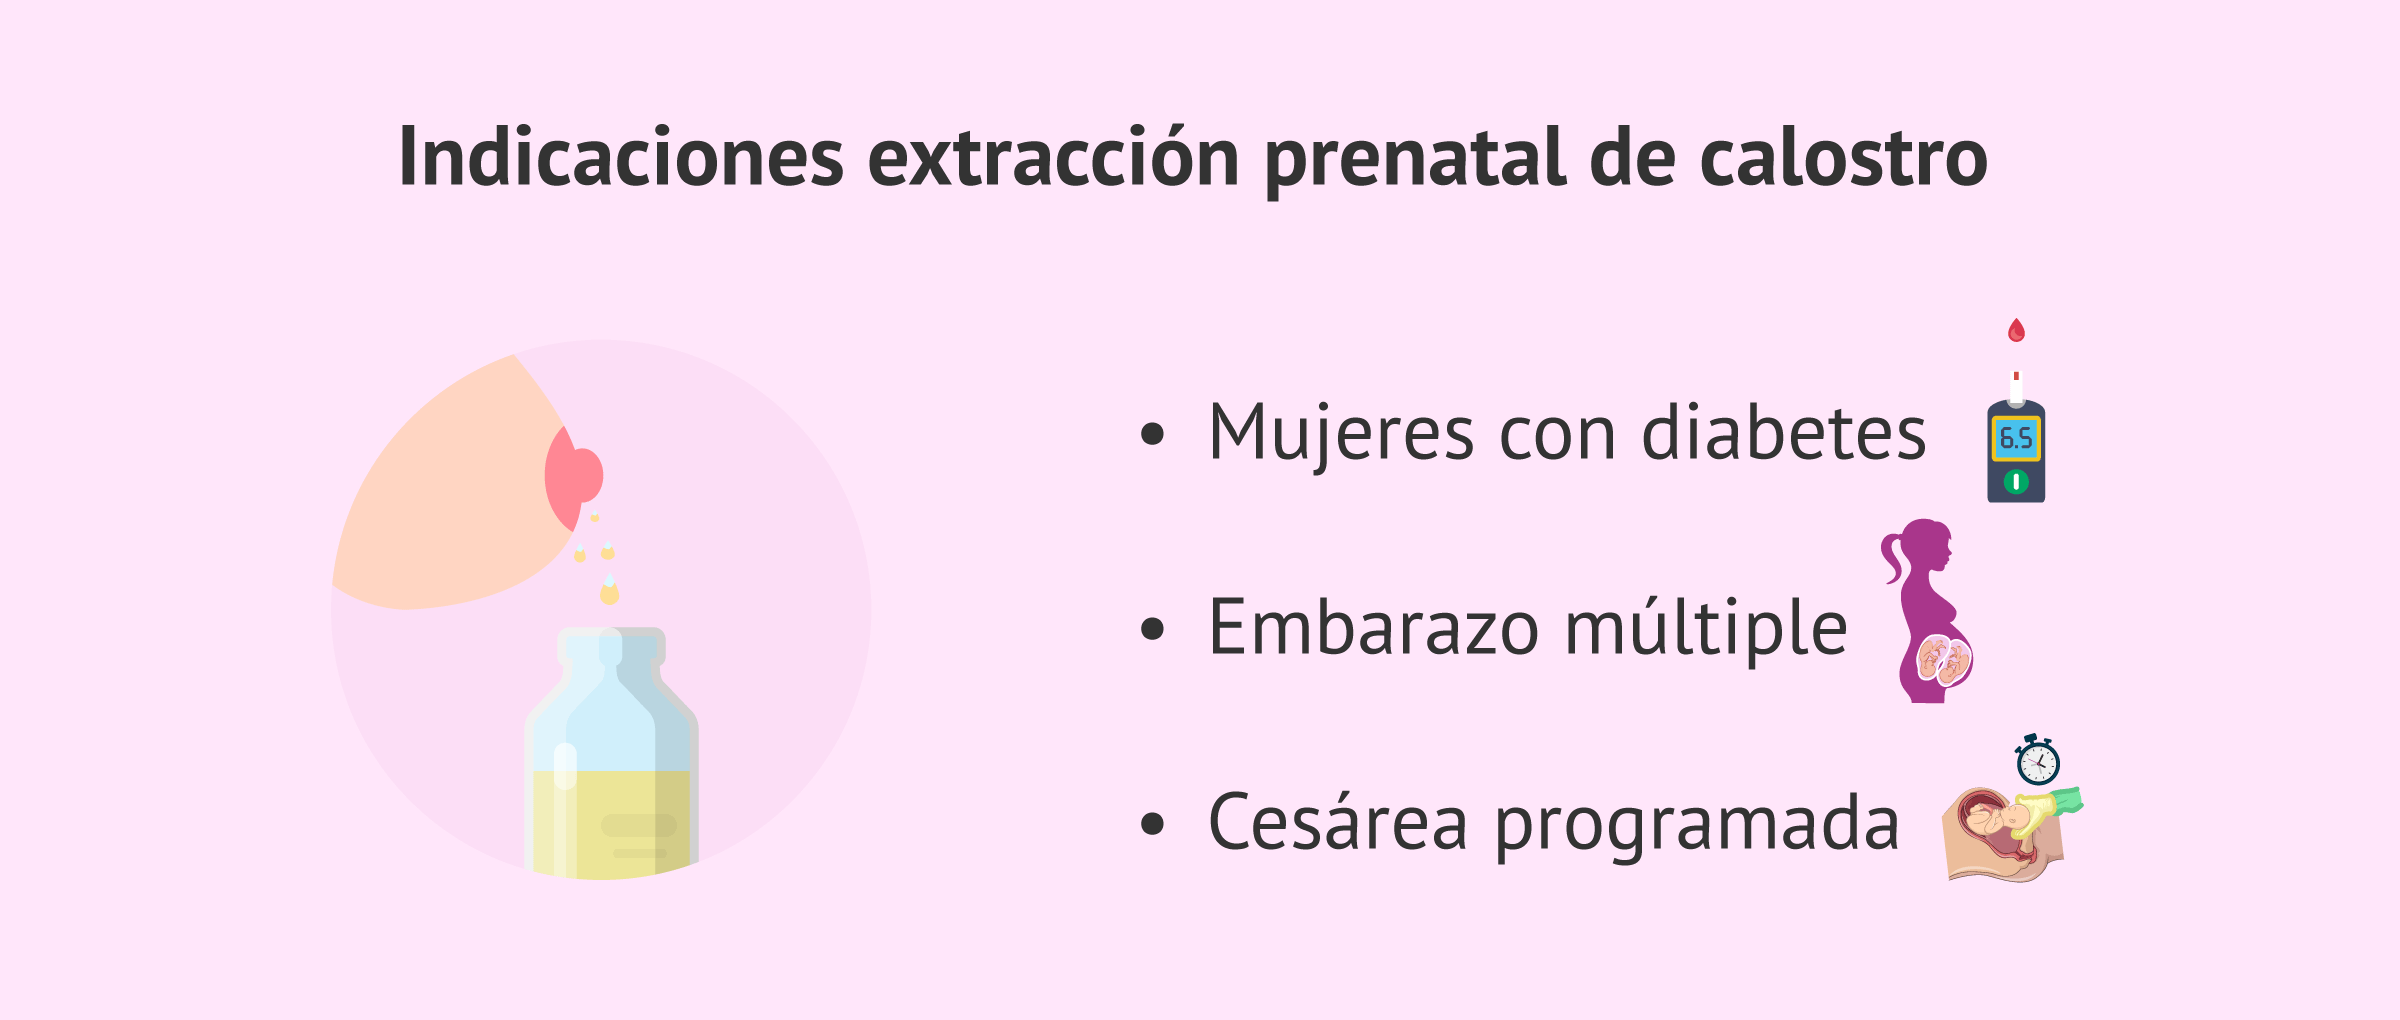 Indicaciones de la extracción prenatal del calostro